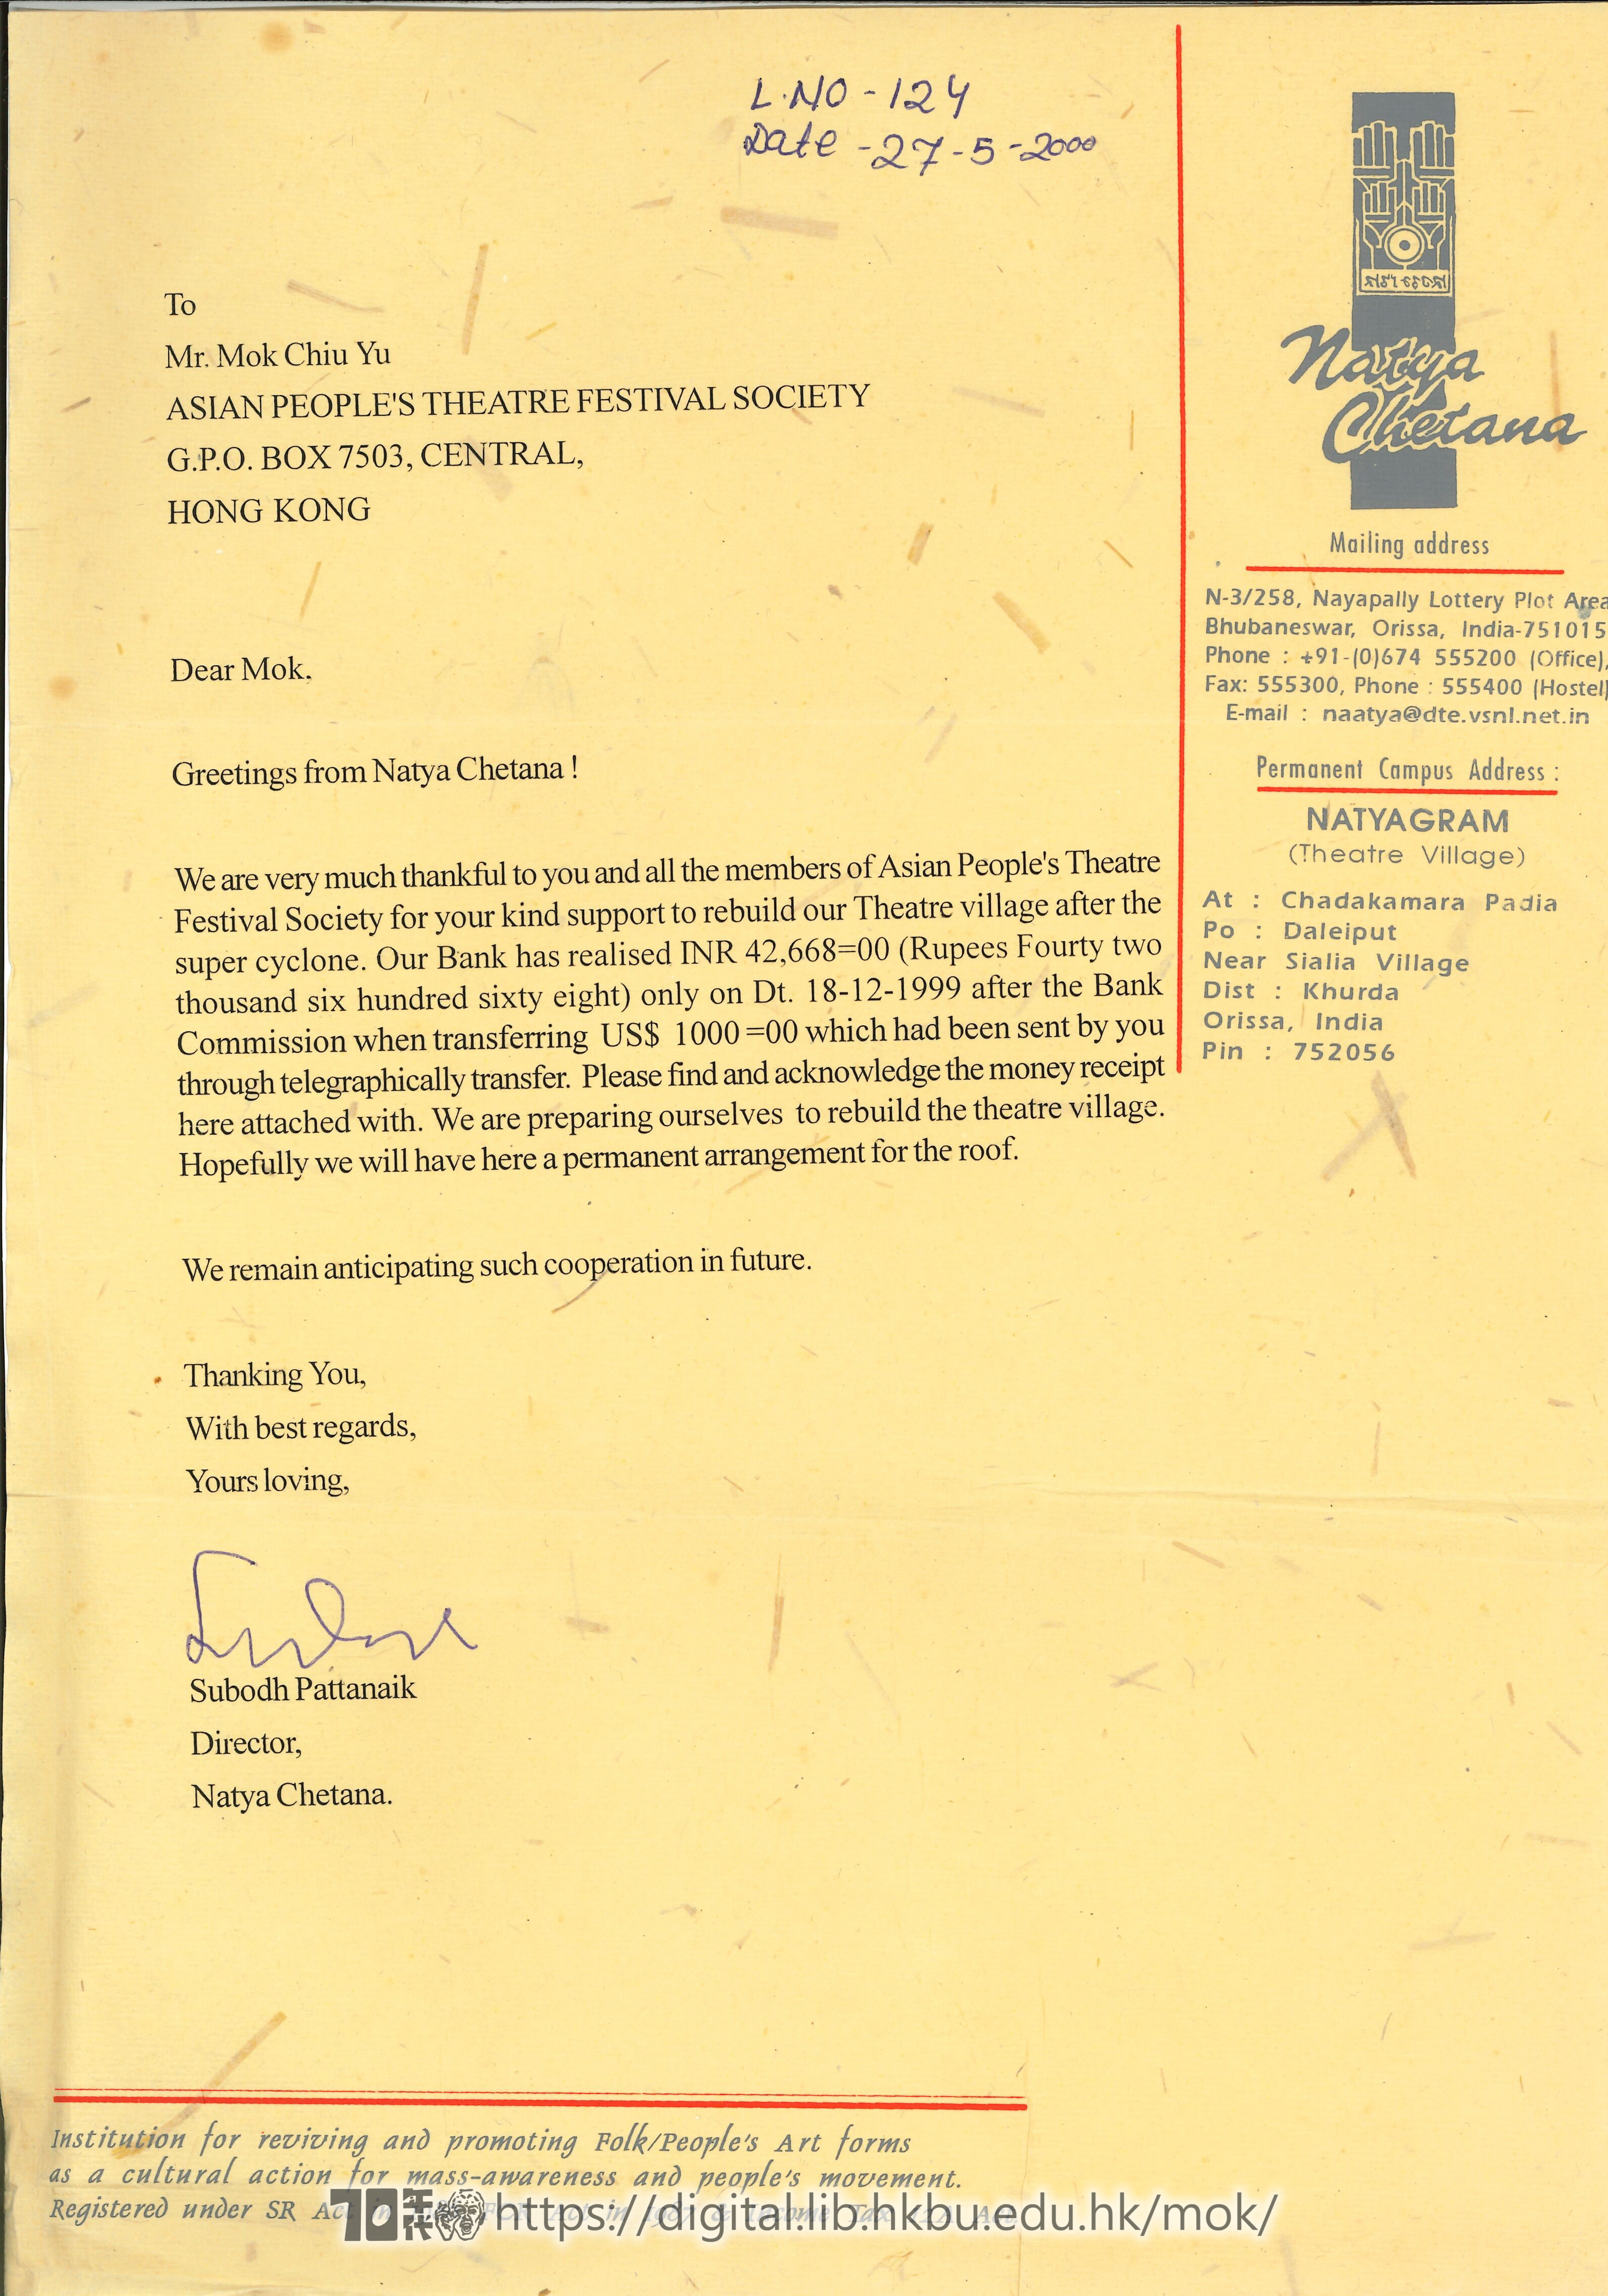   印度Natya Chetana總監Subodh Pattanaik來信及收據  